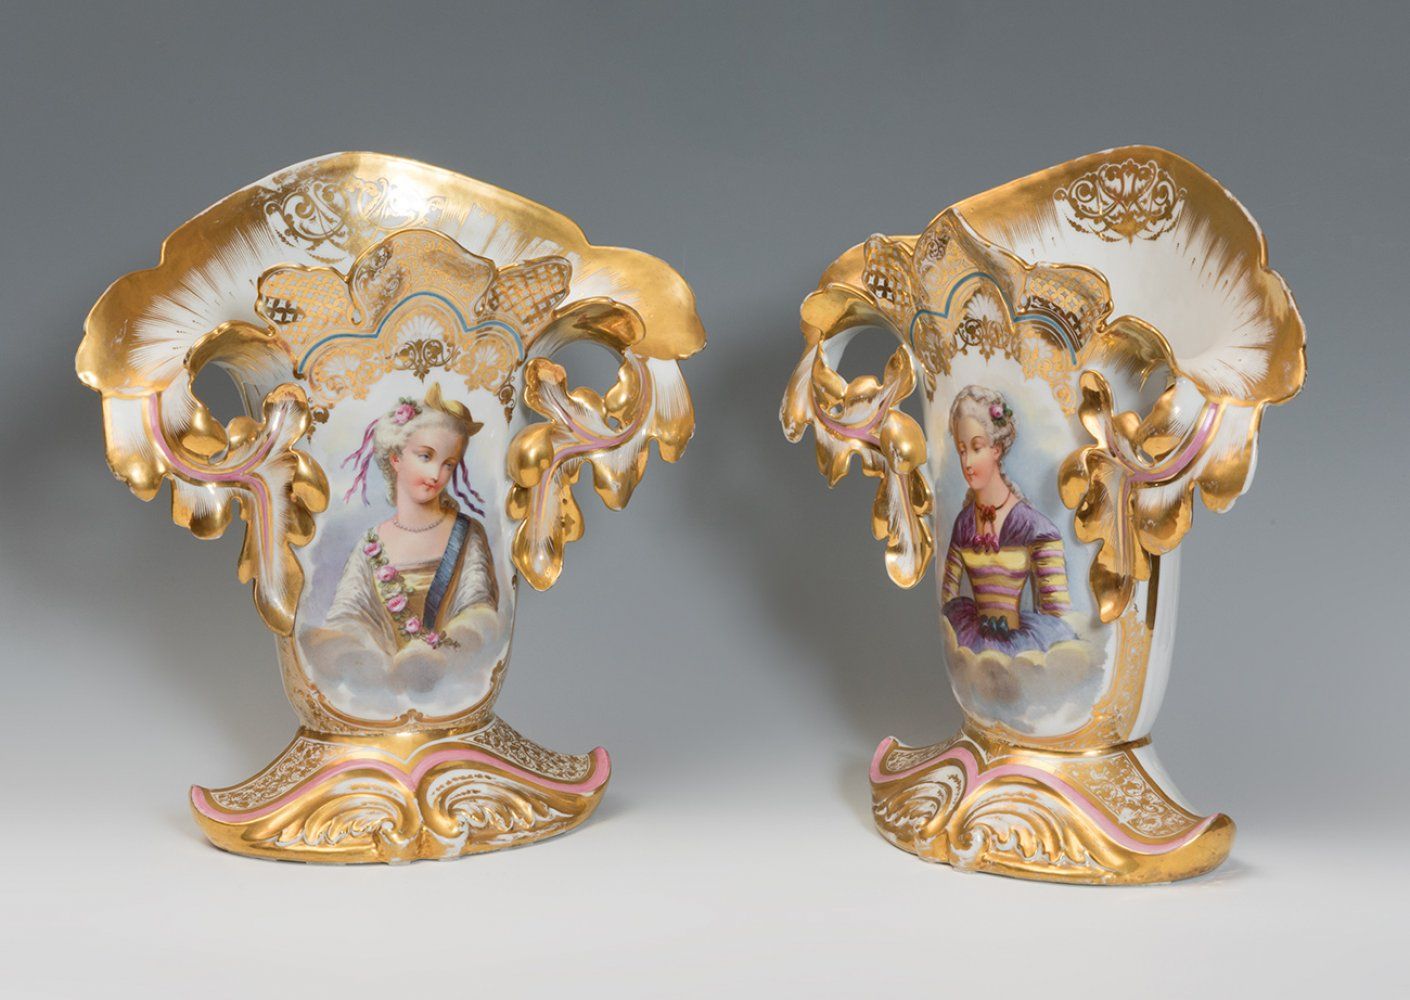 Null 一对伊丽莎白时代的花瓶。西班牙，19世纪中期。
珐琅彩瓷器。
尺寸为41 x 37厘米（每个）。
这对花瓶是以镀金和珐琅彩的浮雕装饰的。其正面描绘了两&hellip;